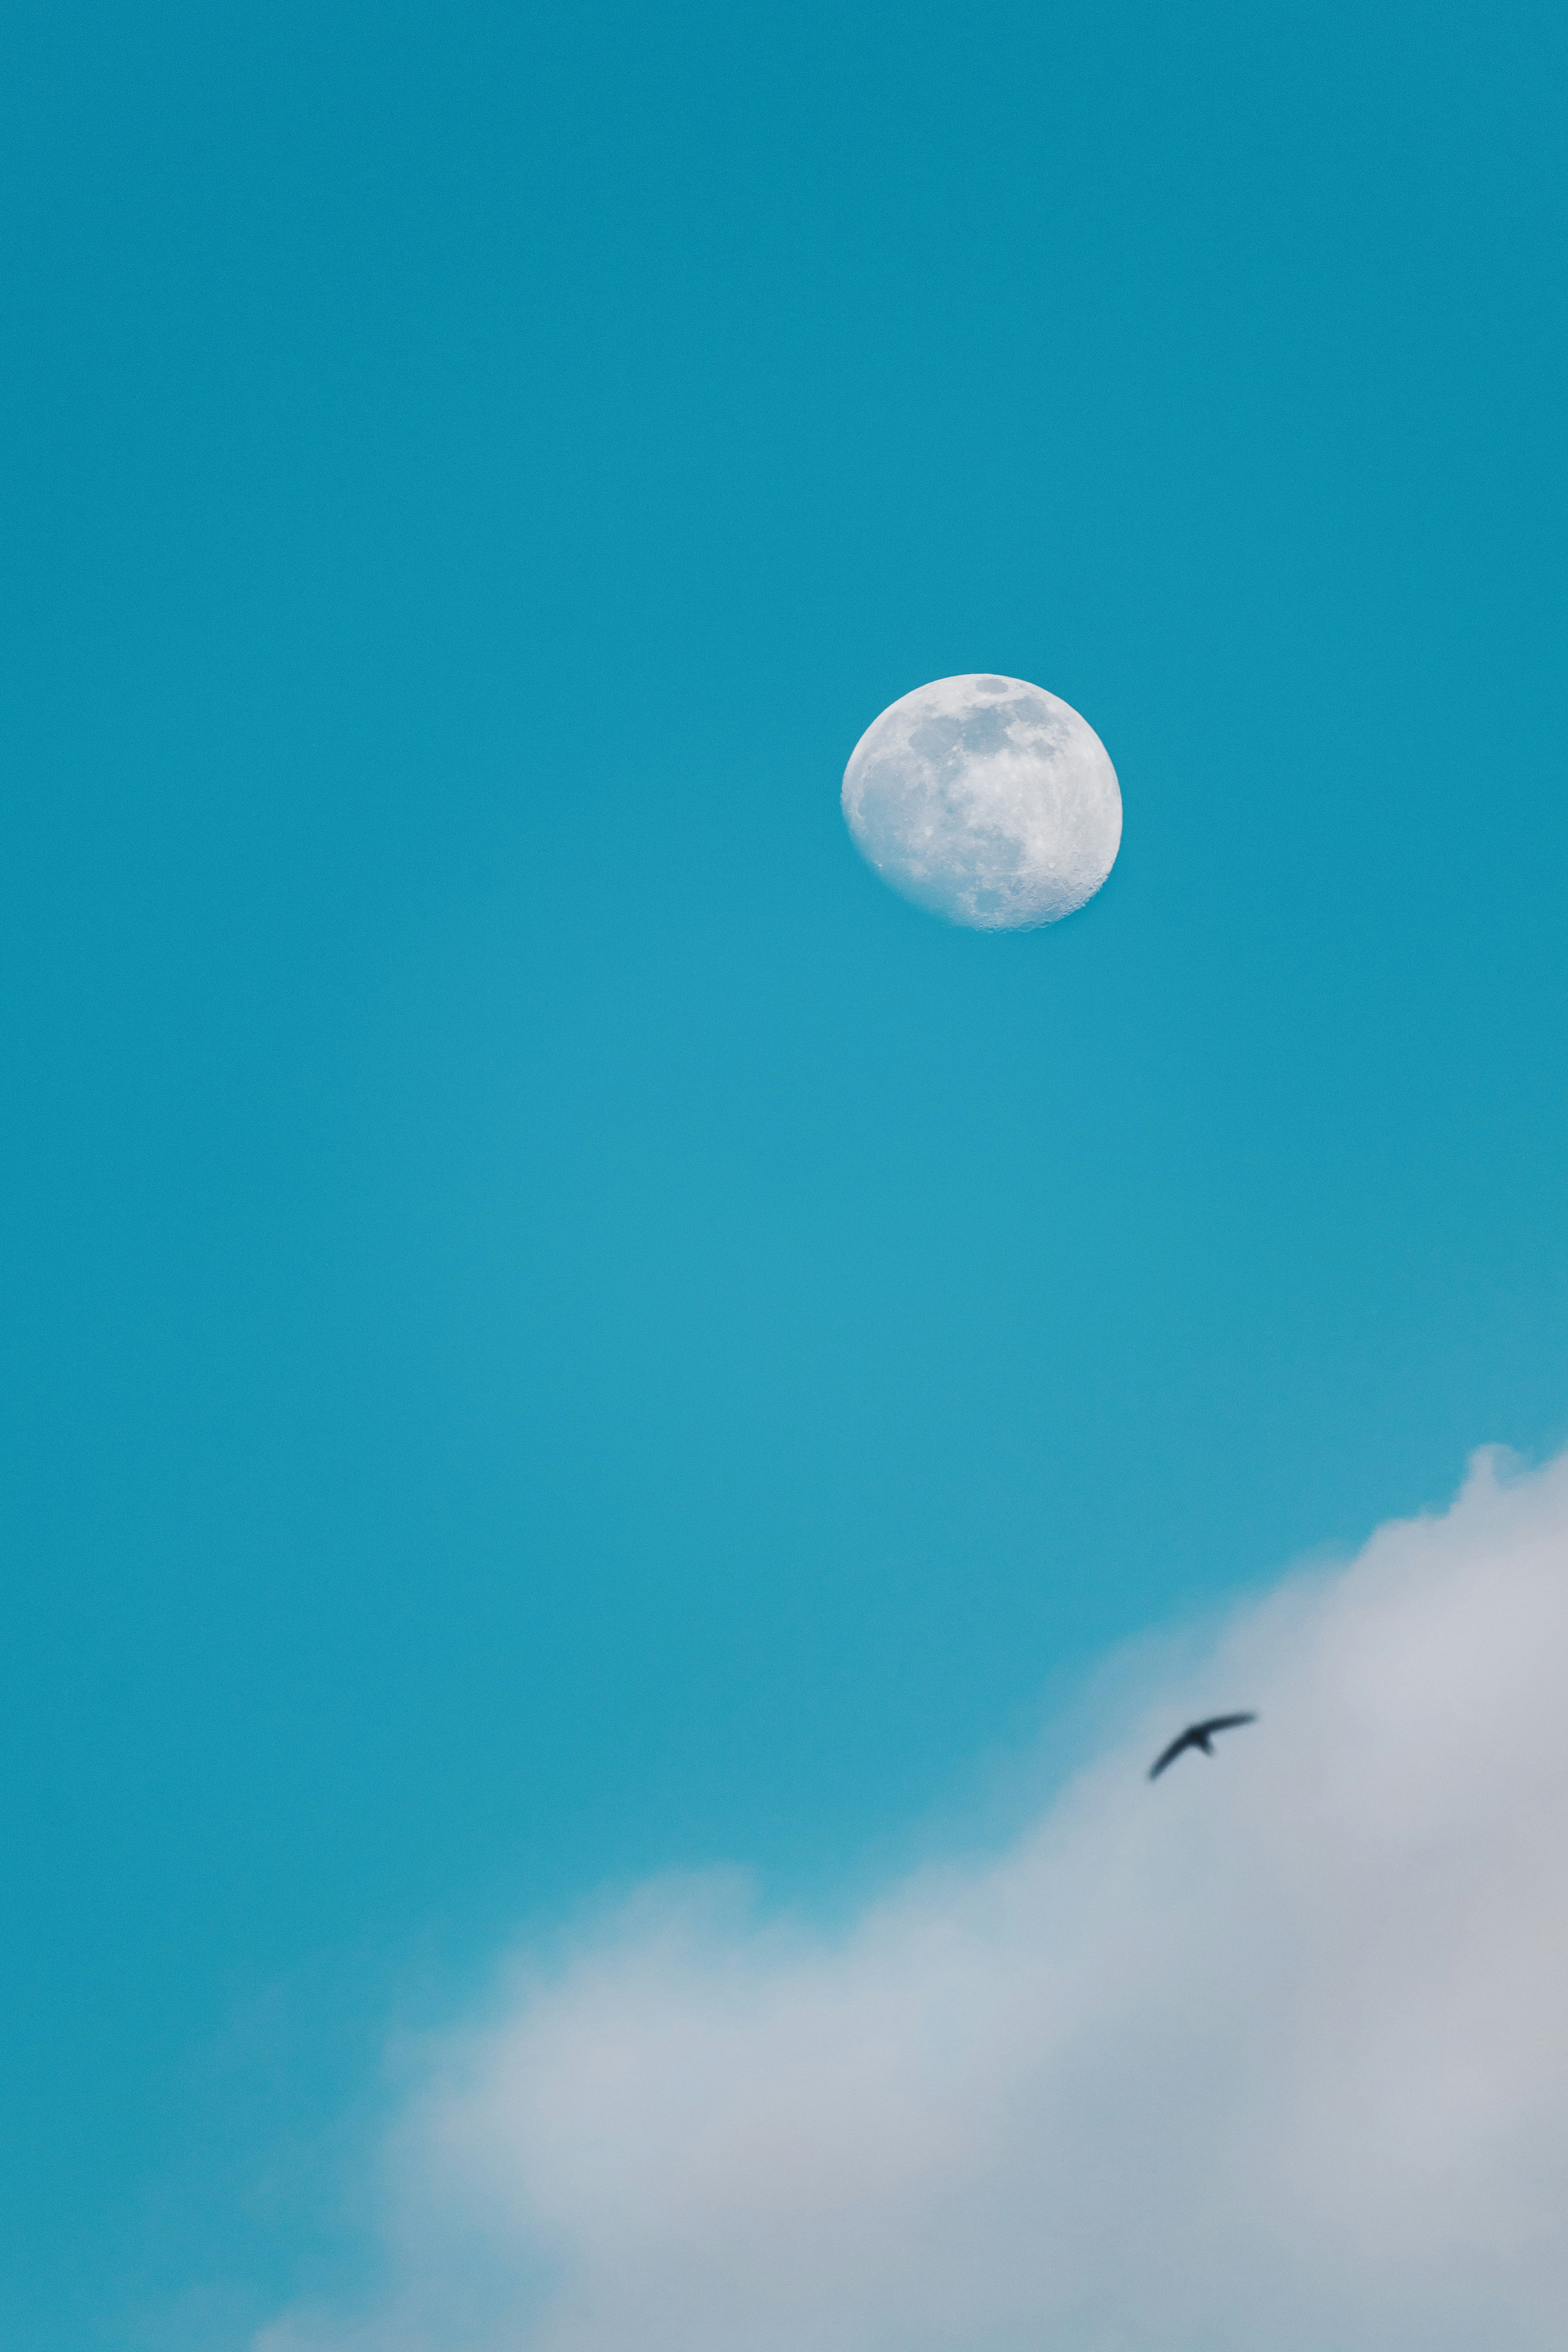 white full moon in blue sky